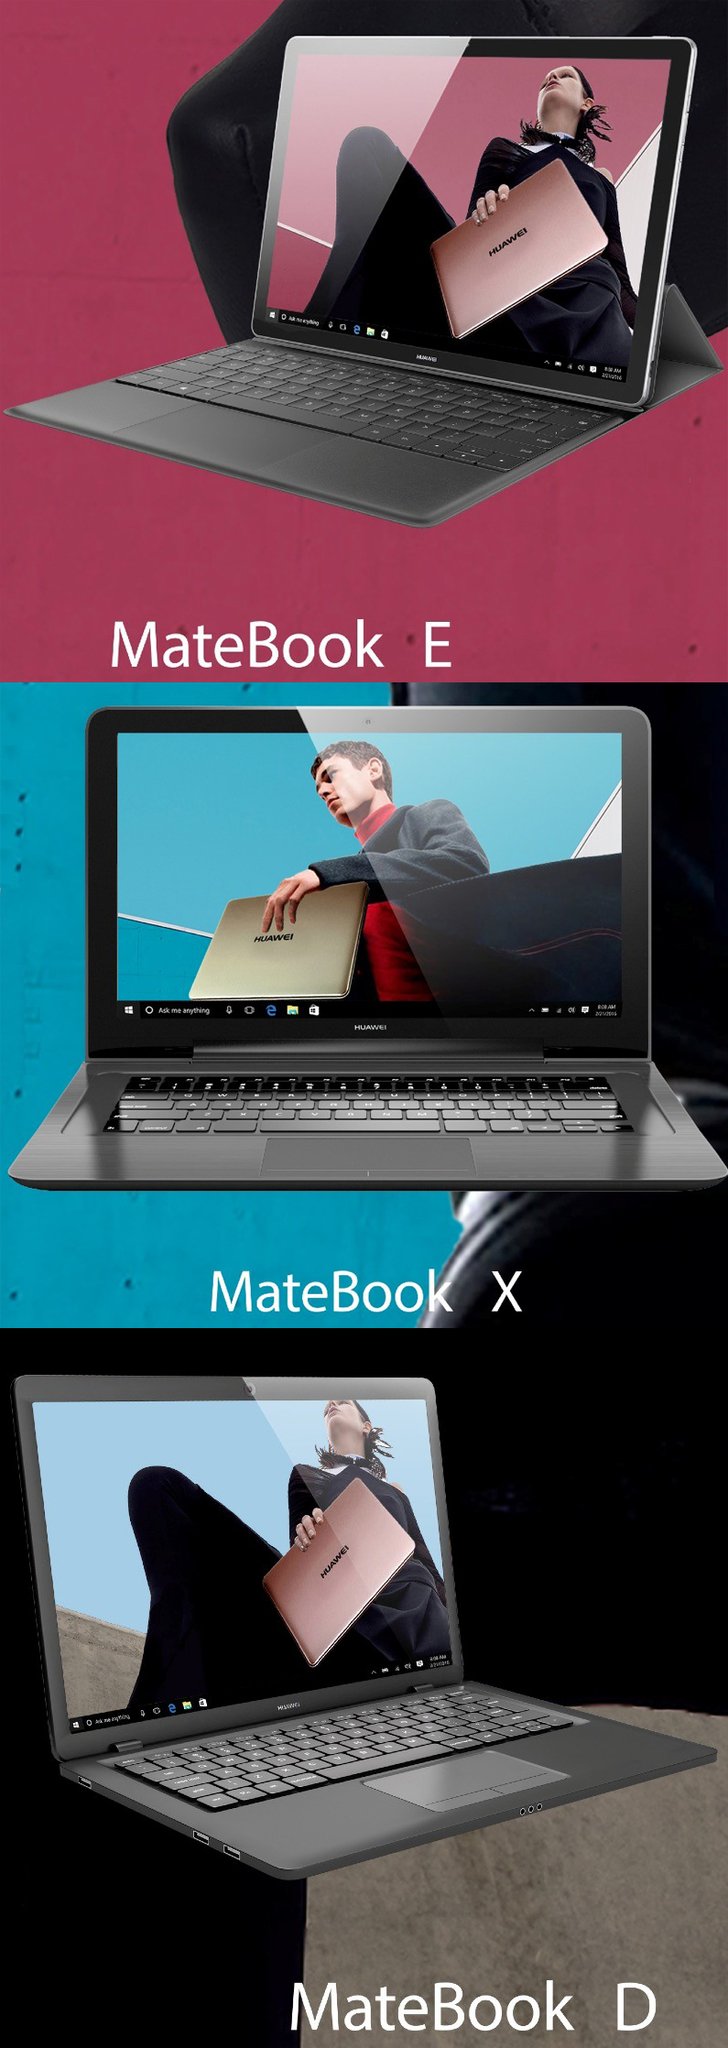 Huawei Matebook E, X и D.jpg